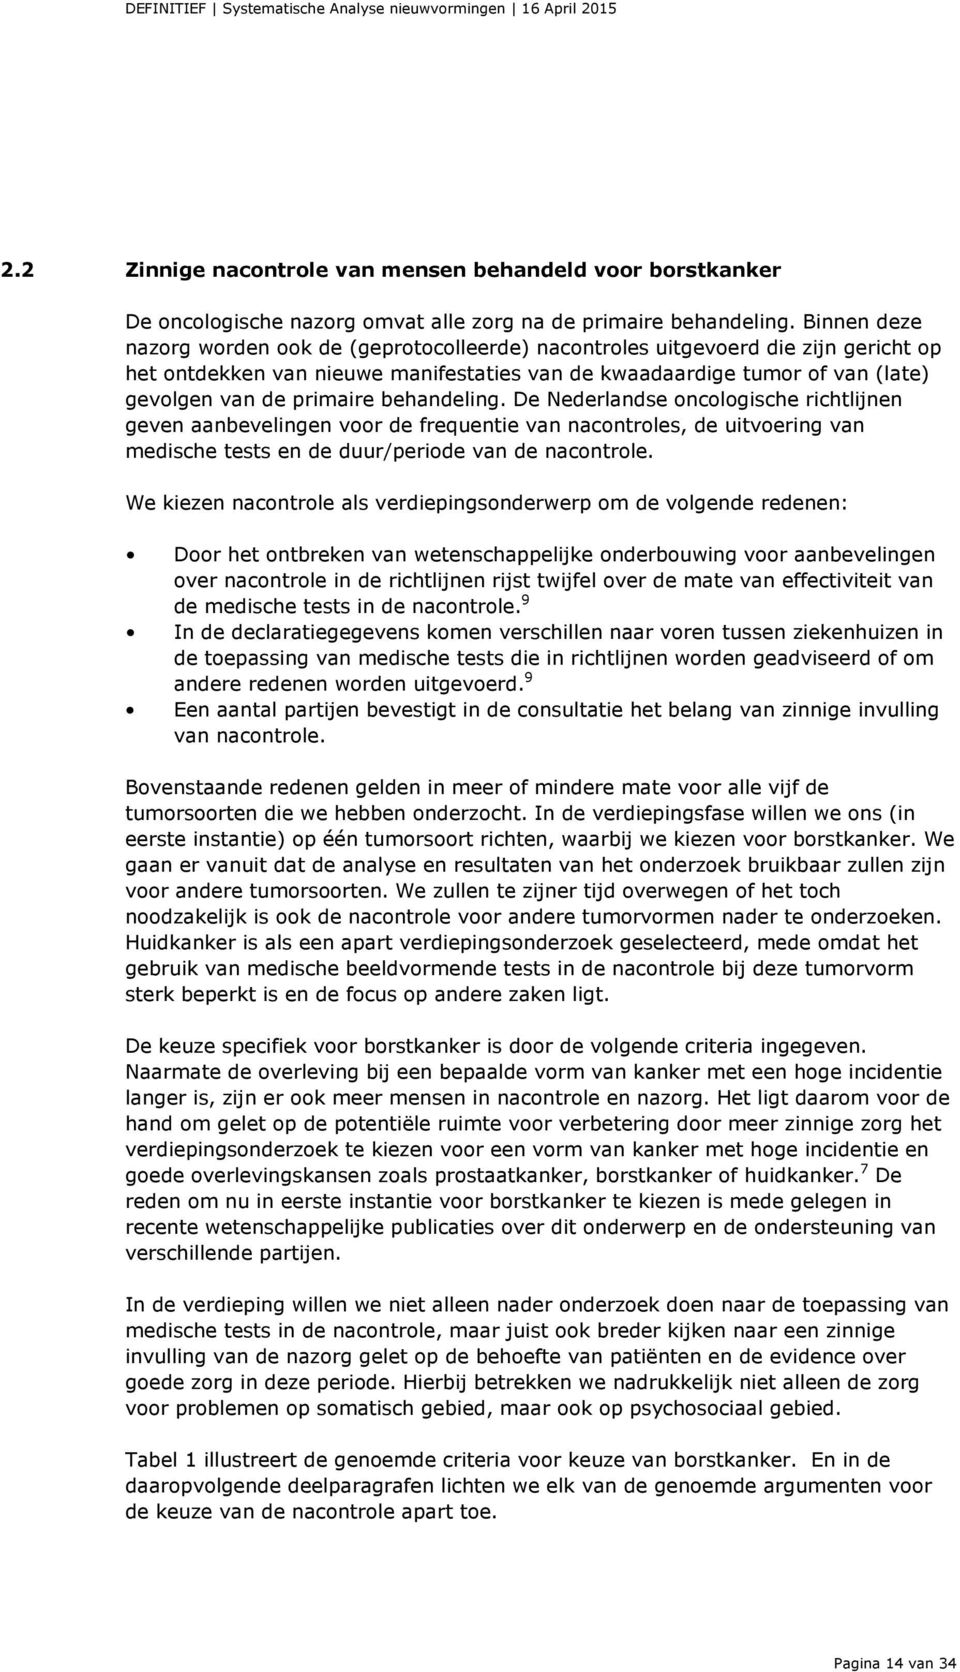 behandeling. De Nederlandse oncologische richtlijnen geven aanbevelingen voor de frequentie van nacontroles, de uitvoering van medische tests en de duur/periode van de nacontrole.